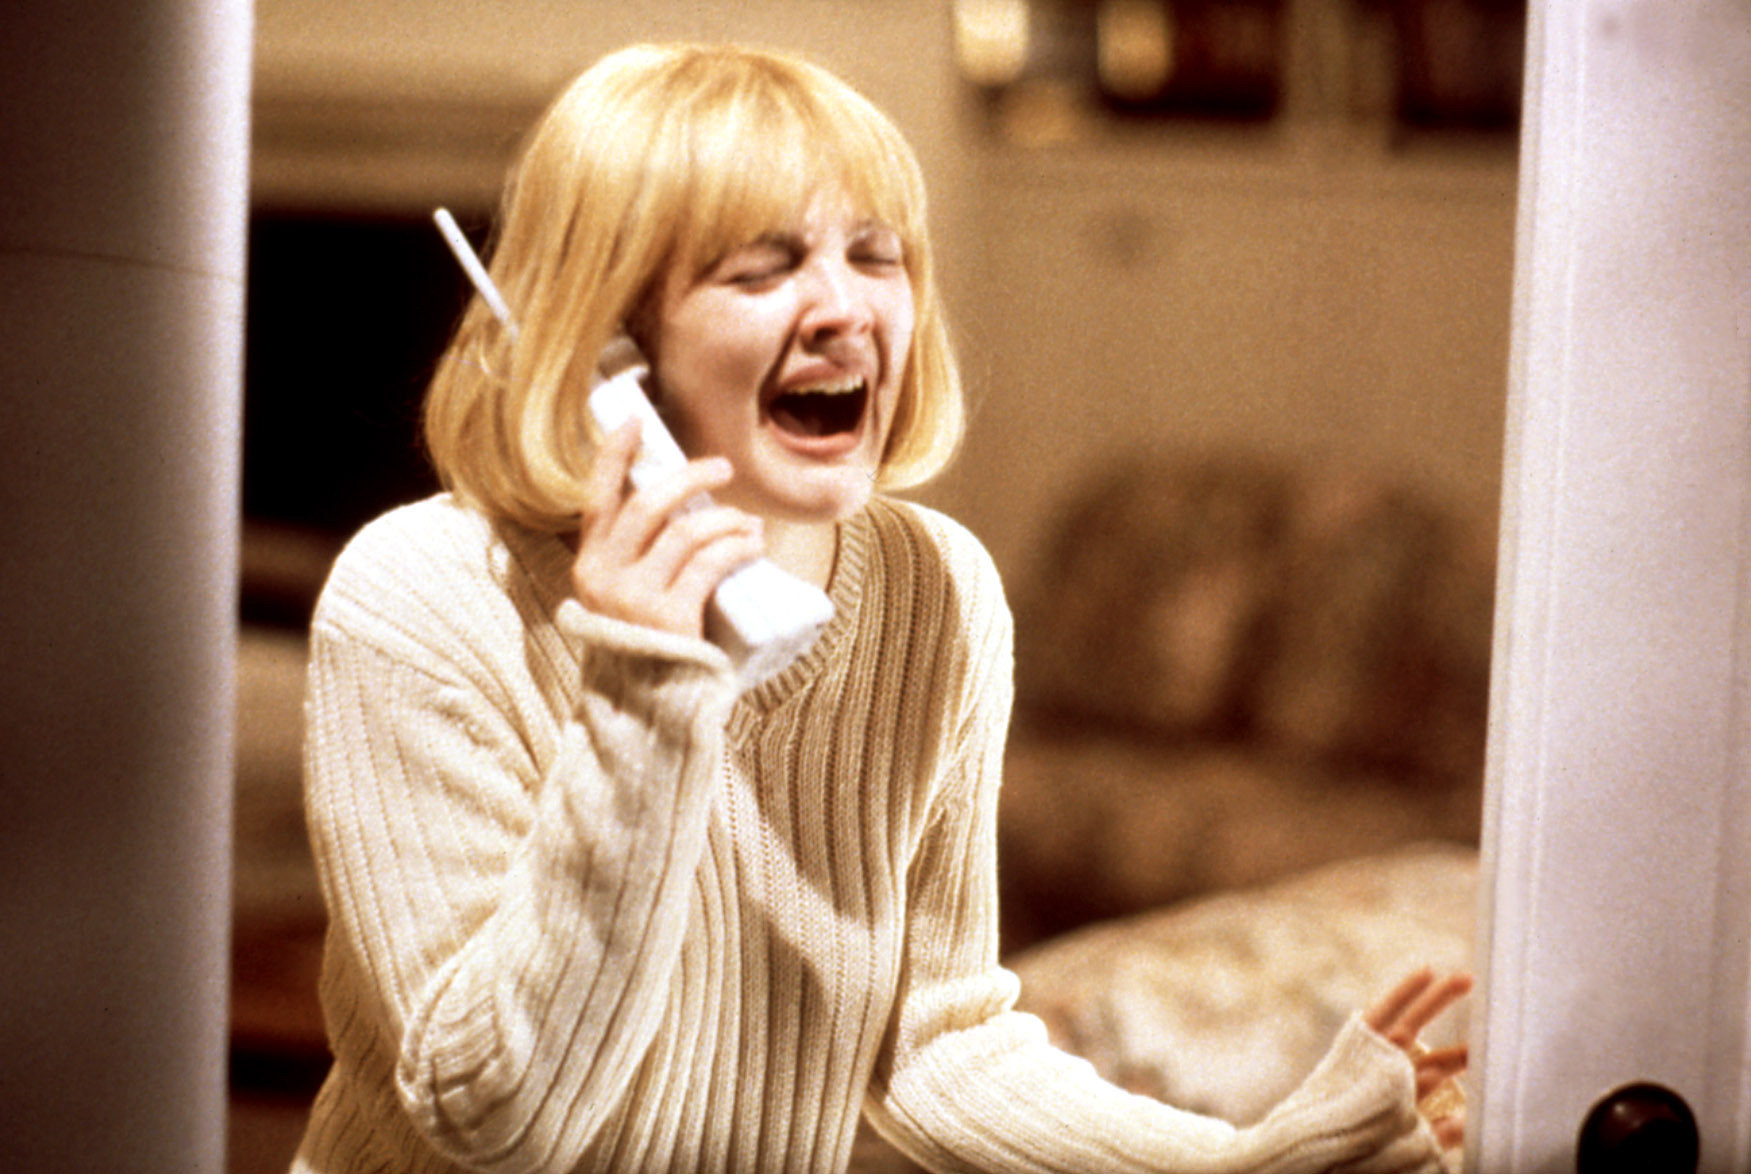 Drew Barrymore in Scream